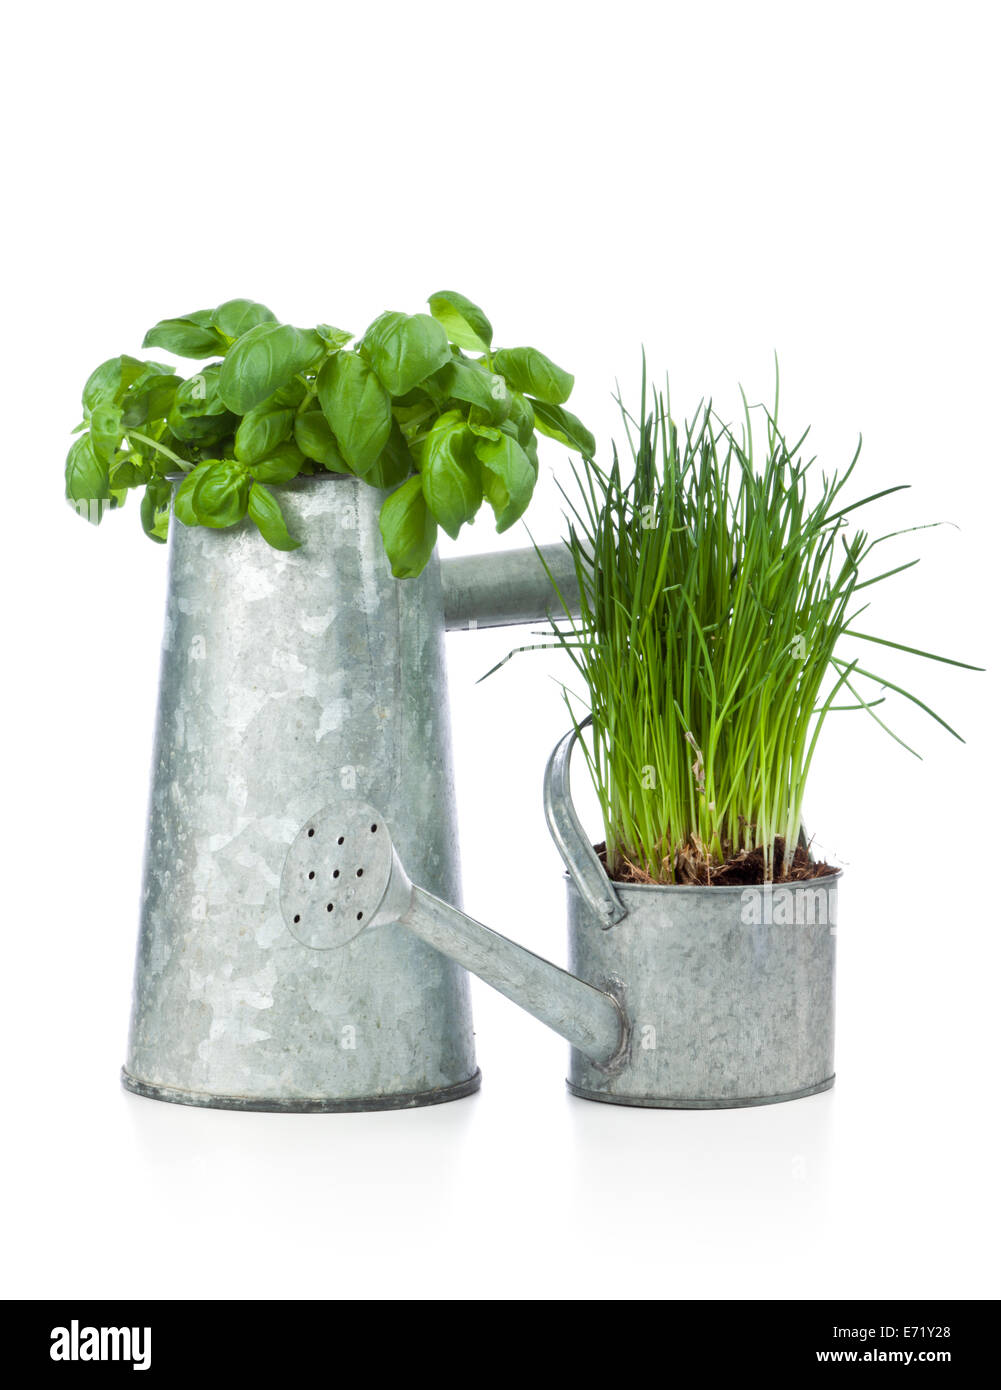 Basilikum und Schnittlauch Pflanzen Topfpflanzen in Gießkannen isoliert auf weißem Hintergrund Stockfoto